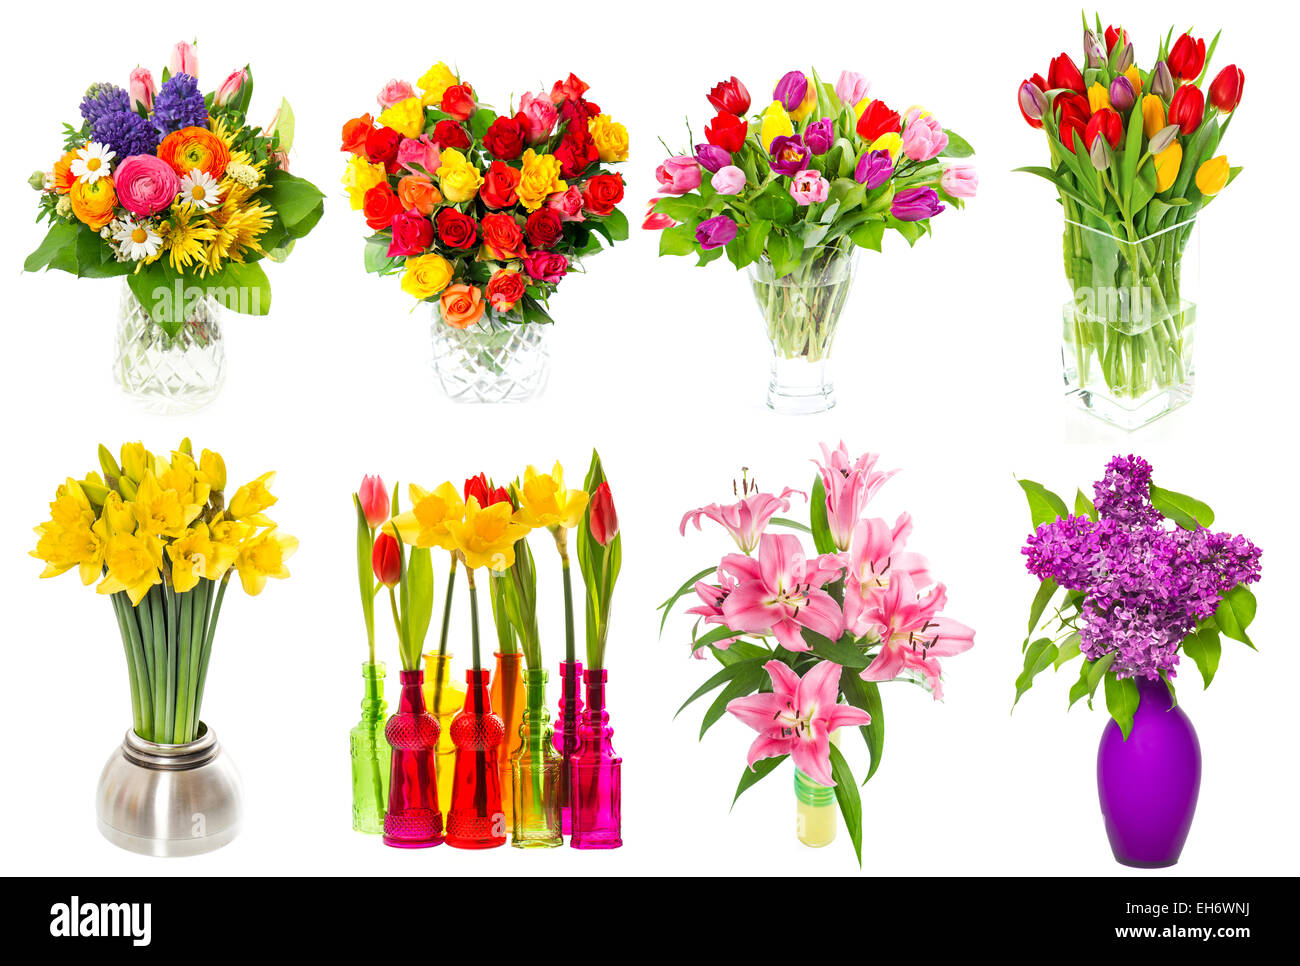 Bouquet de fleurs dans un vase. tulipes, roses, lilas, narcisses, fleurs de lys sur fond blanc Banque D'Images